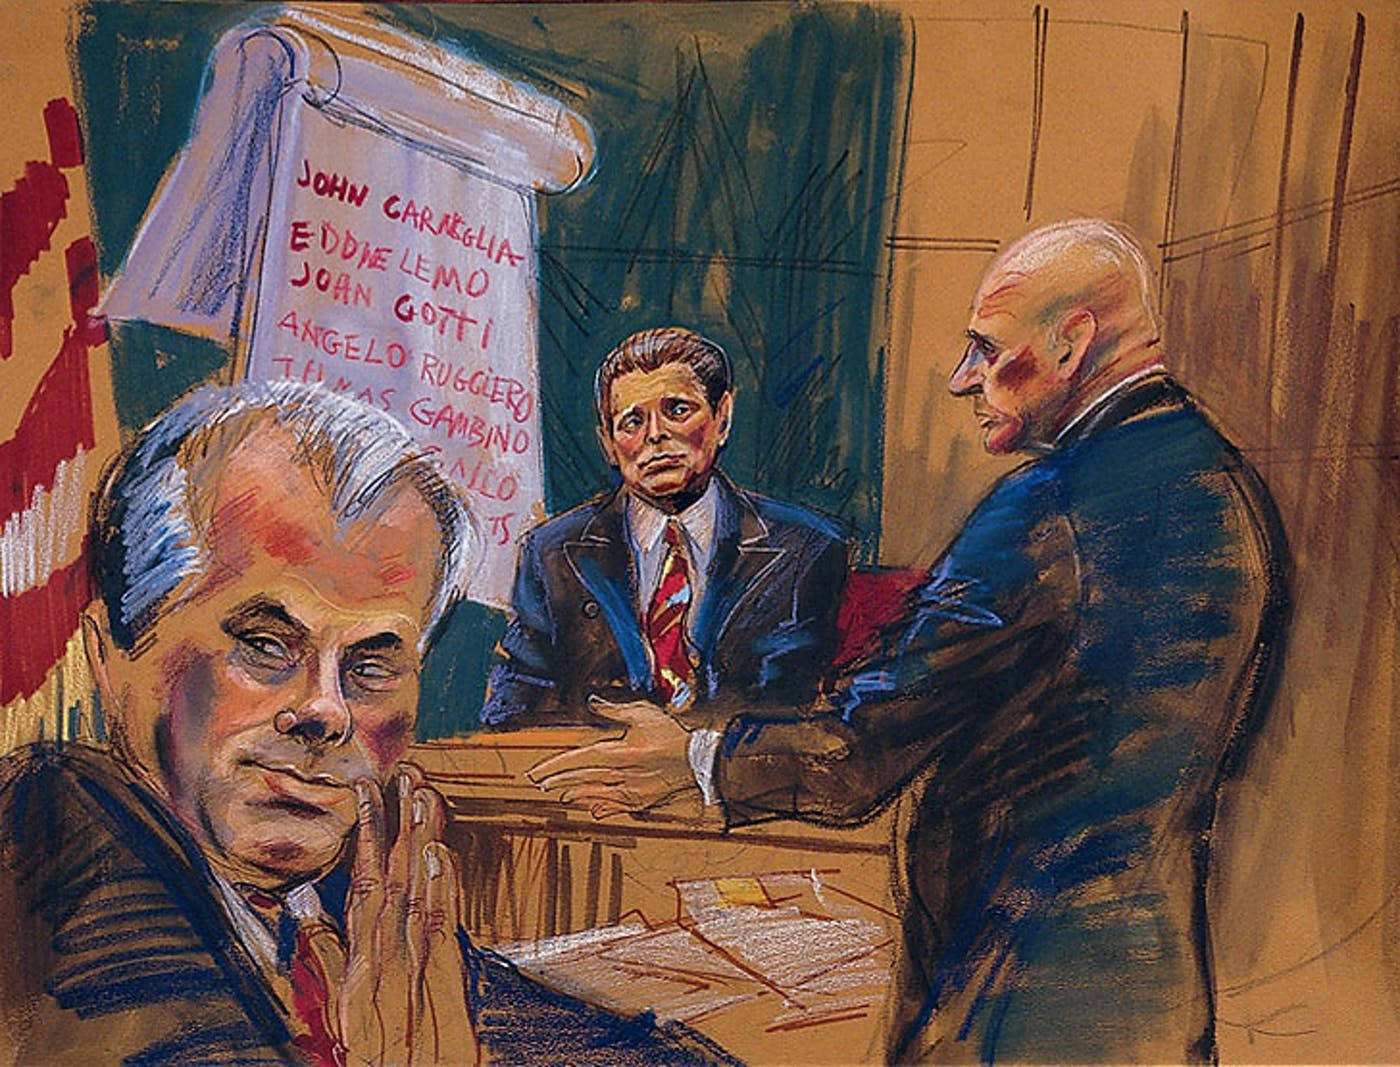 John Gotti Trial Art Wallpaper